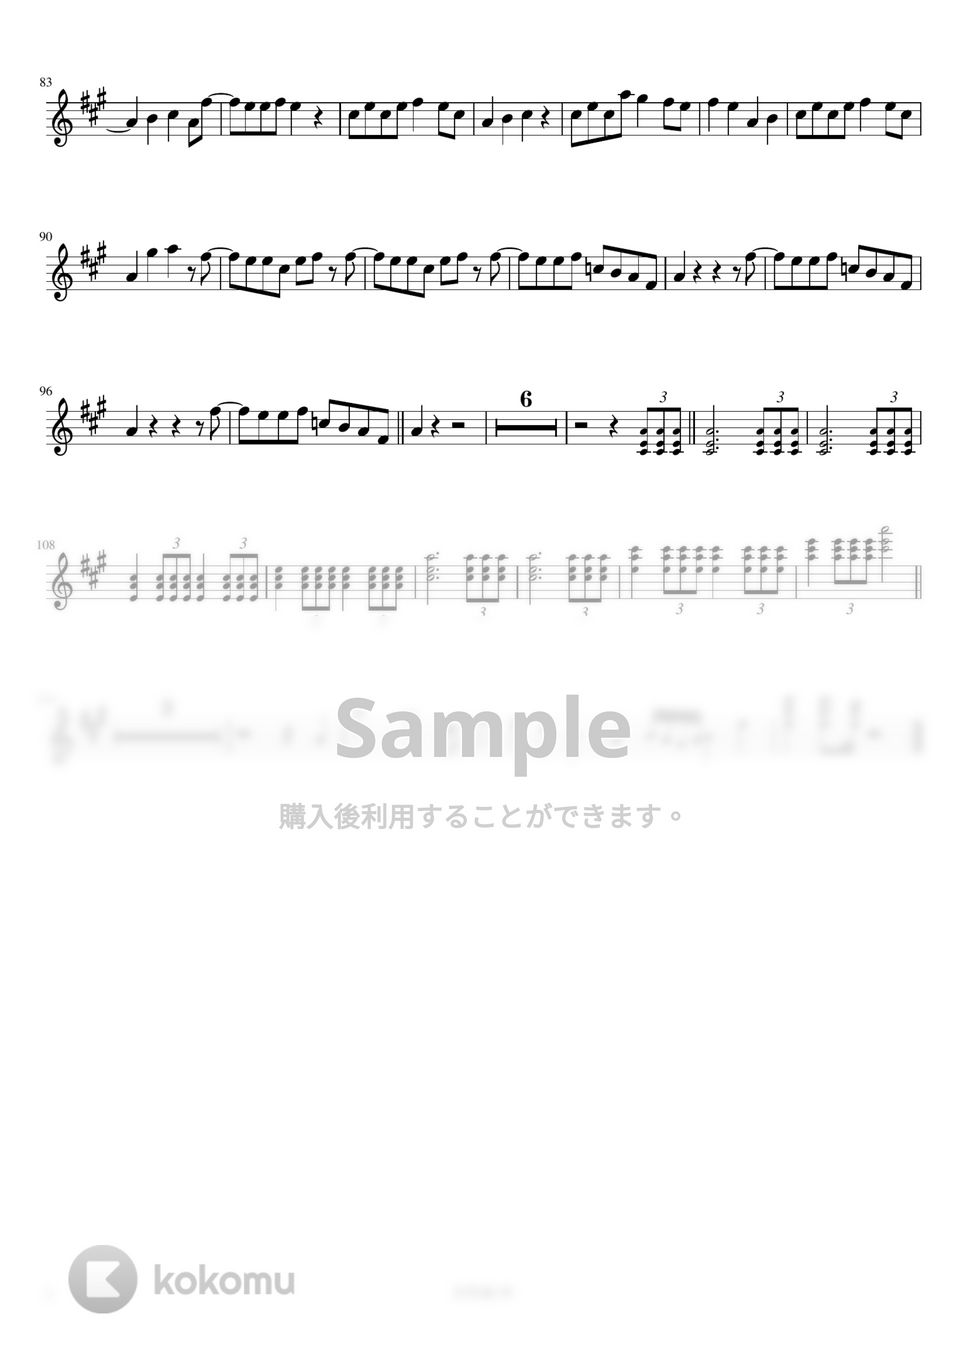 星野源 - 恋 (フルート / C管用メロディー譜) by もりたあいか